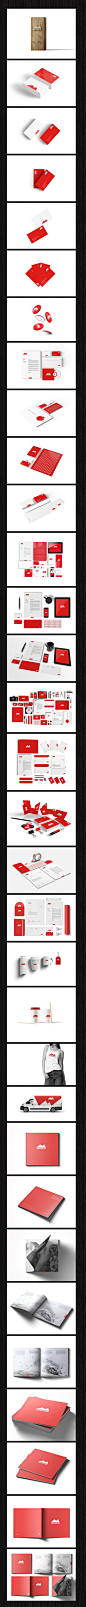 国外红色山峰企业VI智能图层PSD模板贴图素材mockups源文件包装简